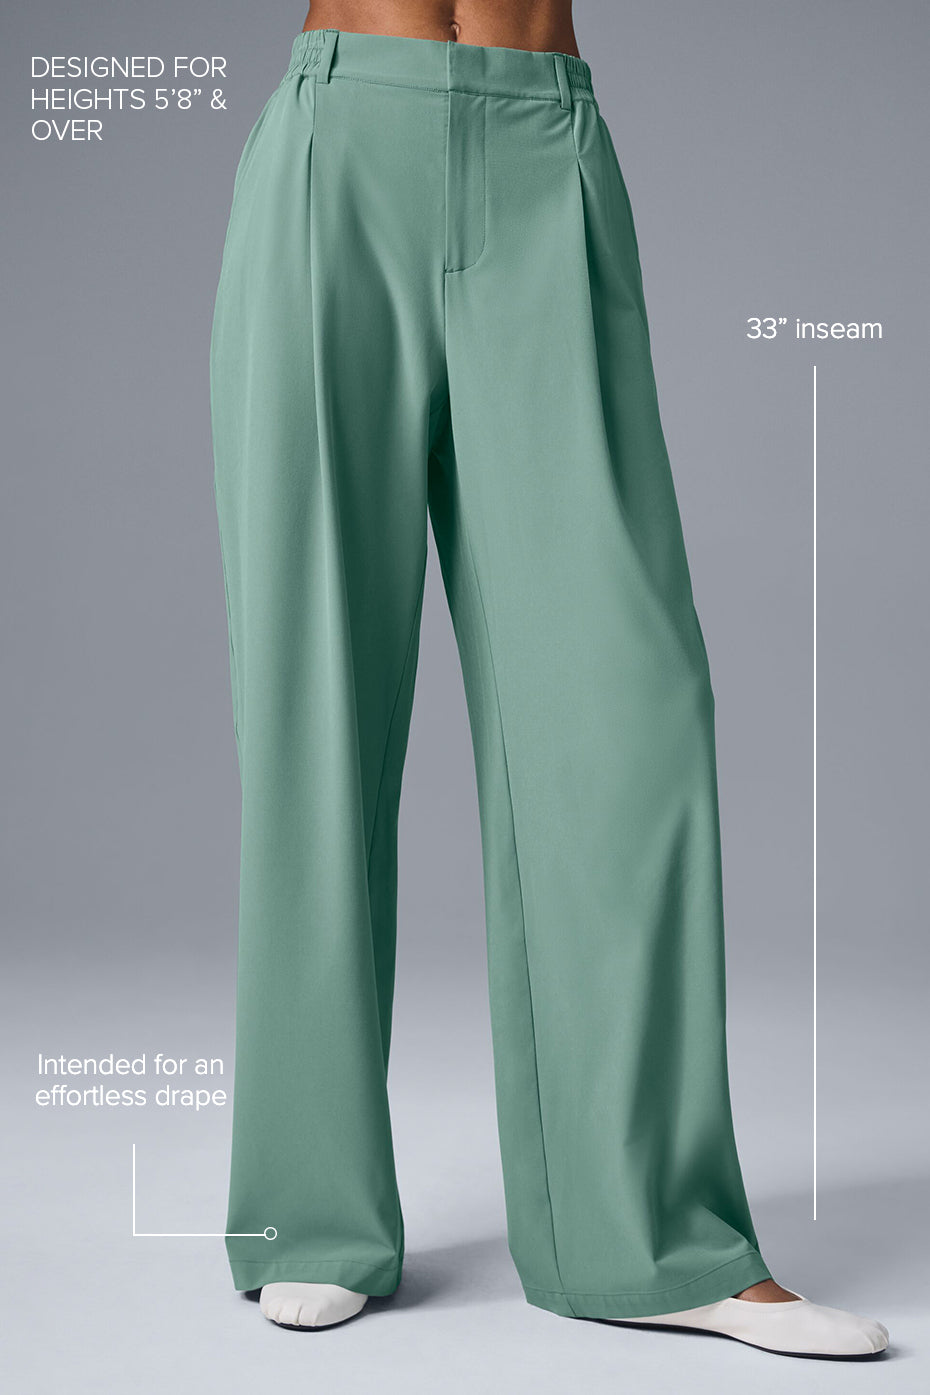 High-Waist Pursuit Trouser (Long) - Botanical Green